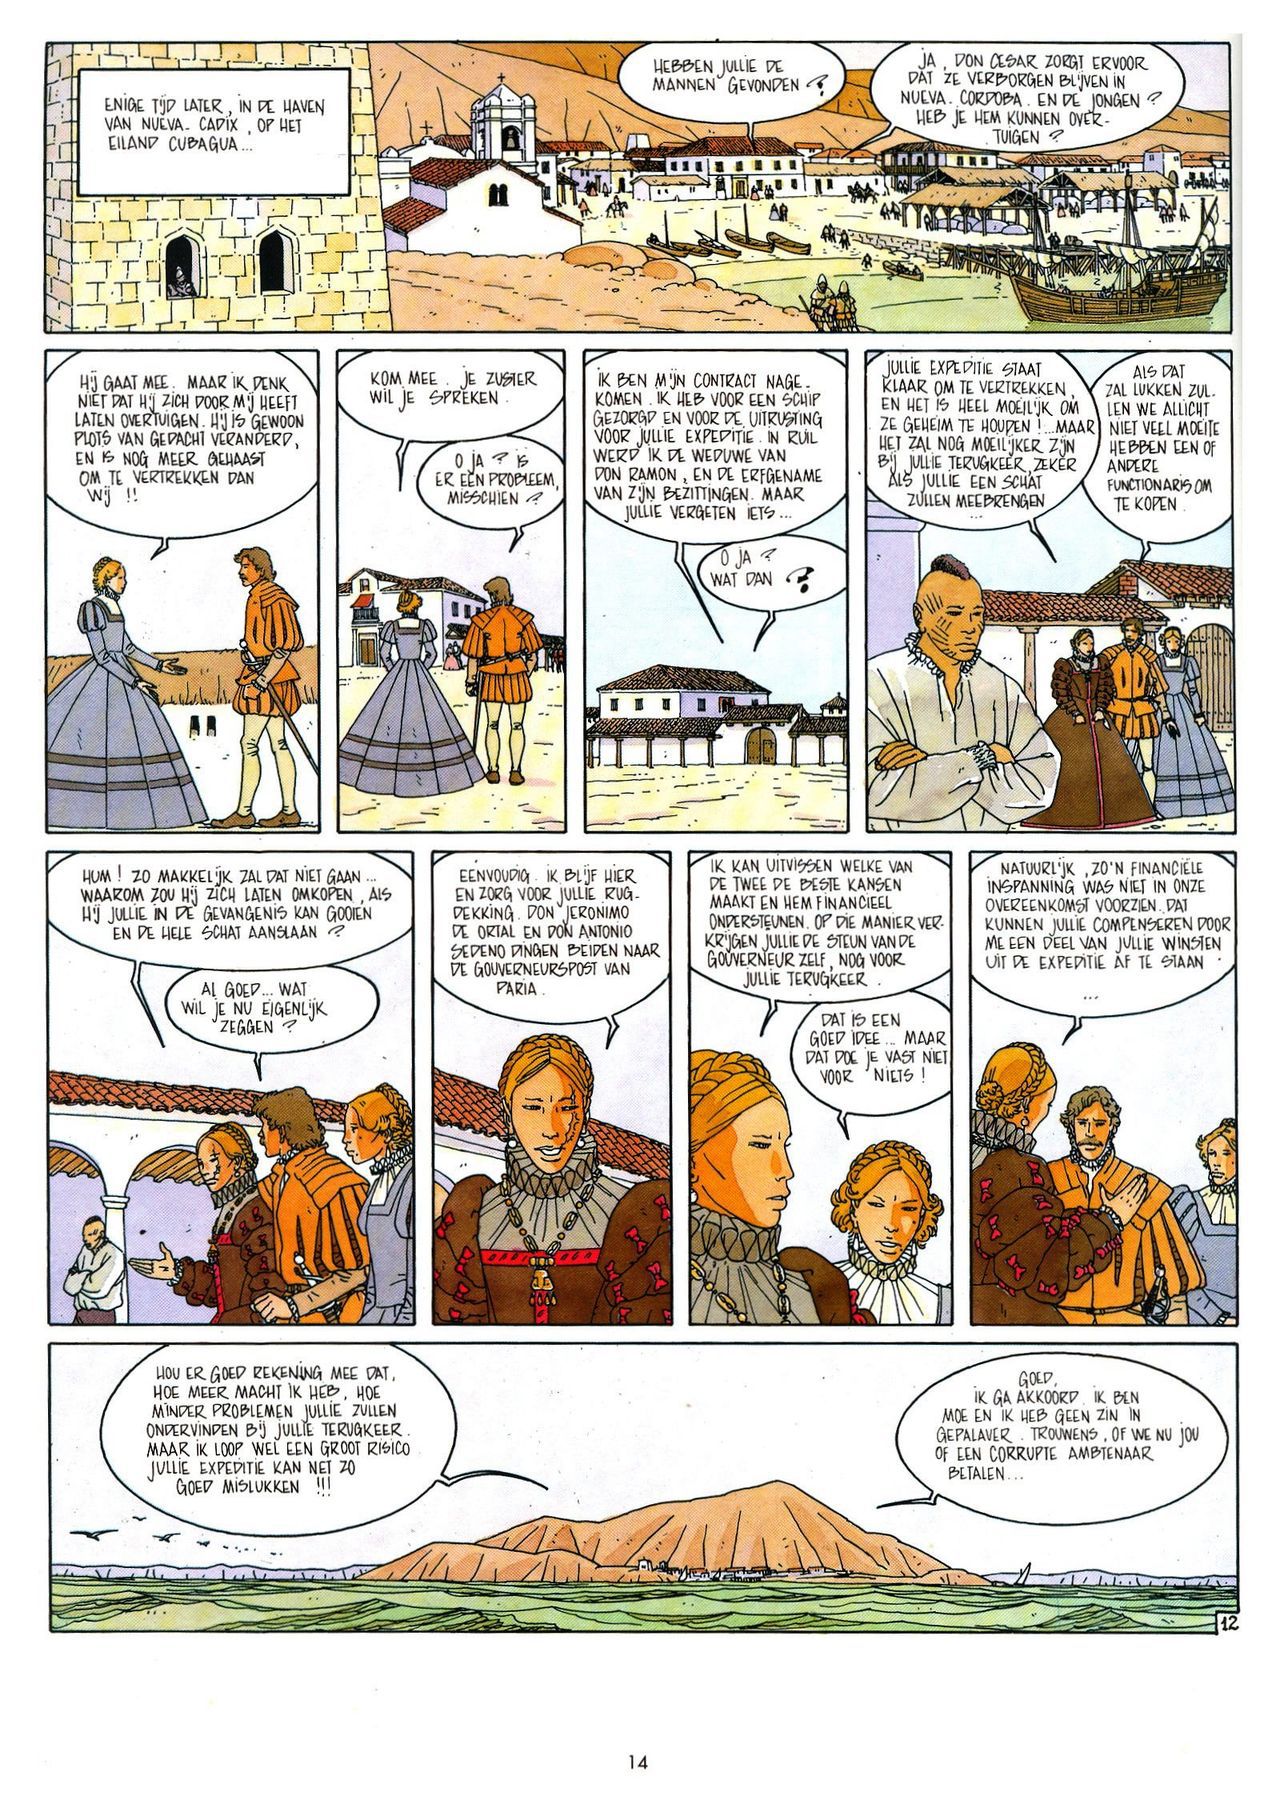 Eldorado - 03 - De Jaguarmensen (Dutch) Franstalige strips die op deze site staan, hier is de Nederlandse uitgave! 14